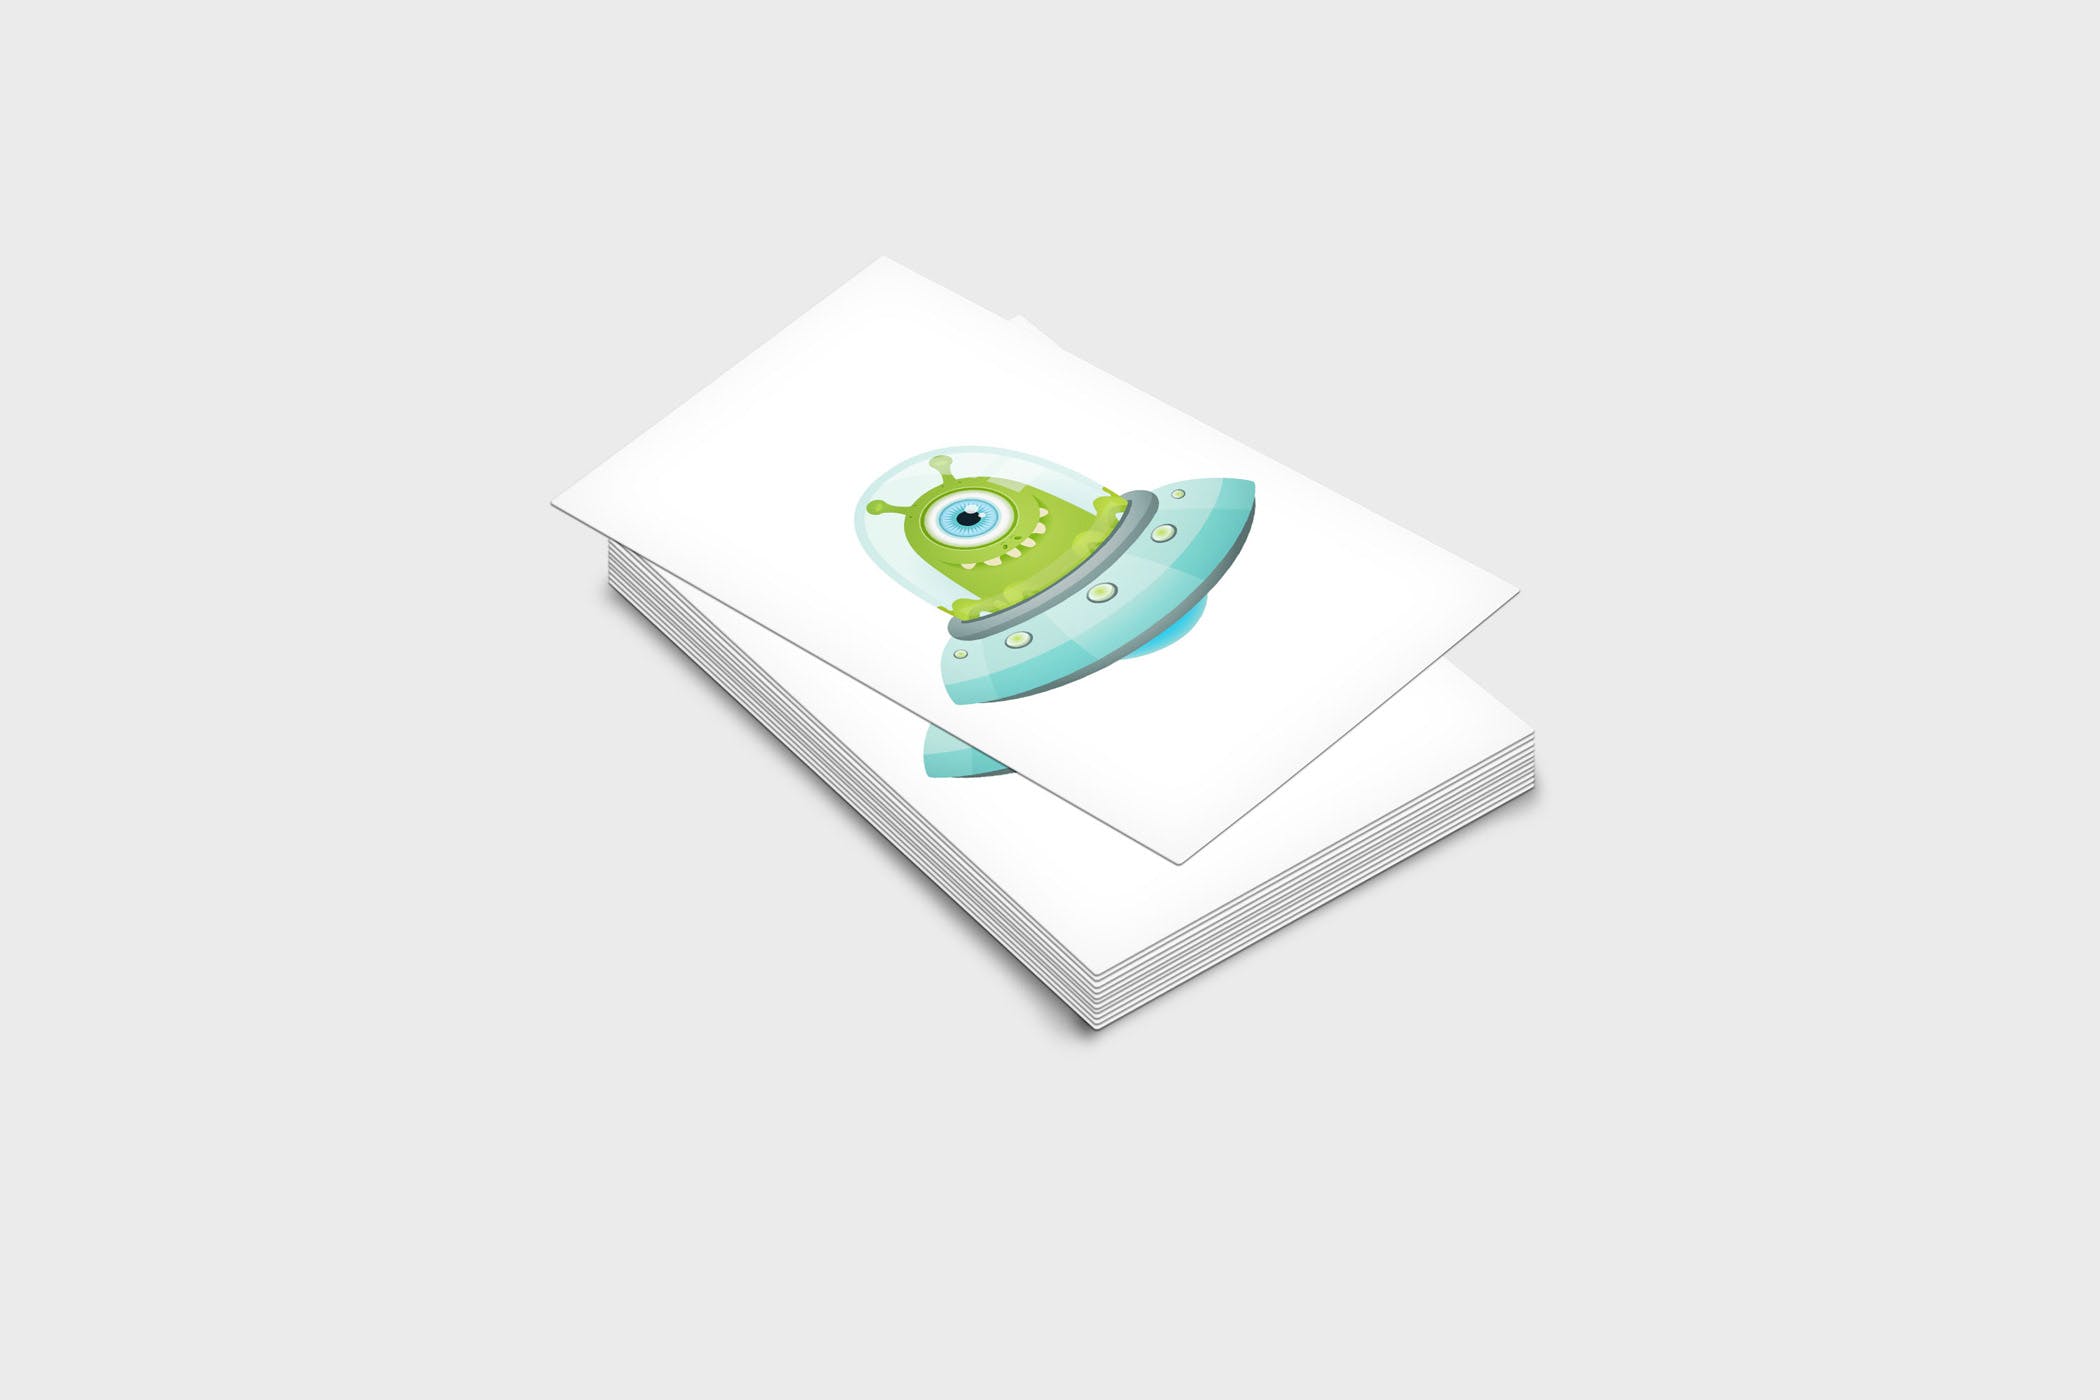 企业名片设计效果图展示样机大洋岛精选模板 4 Business Card Mock-Up Template插图1